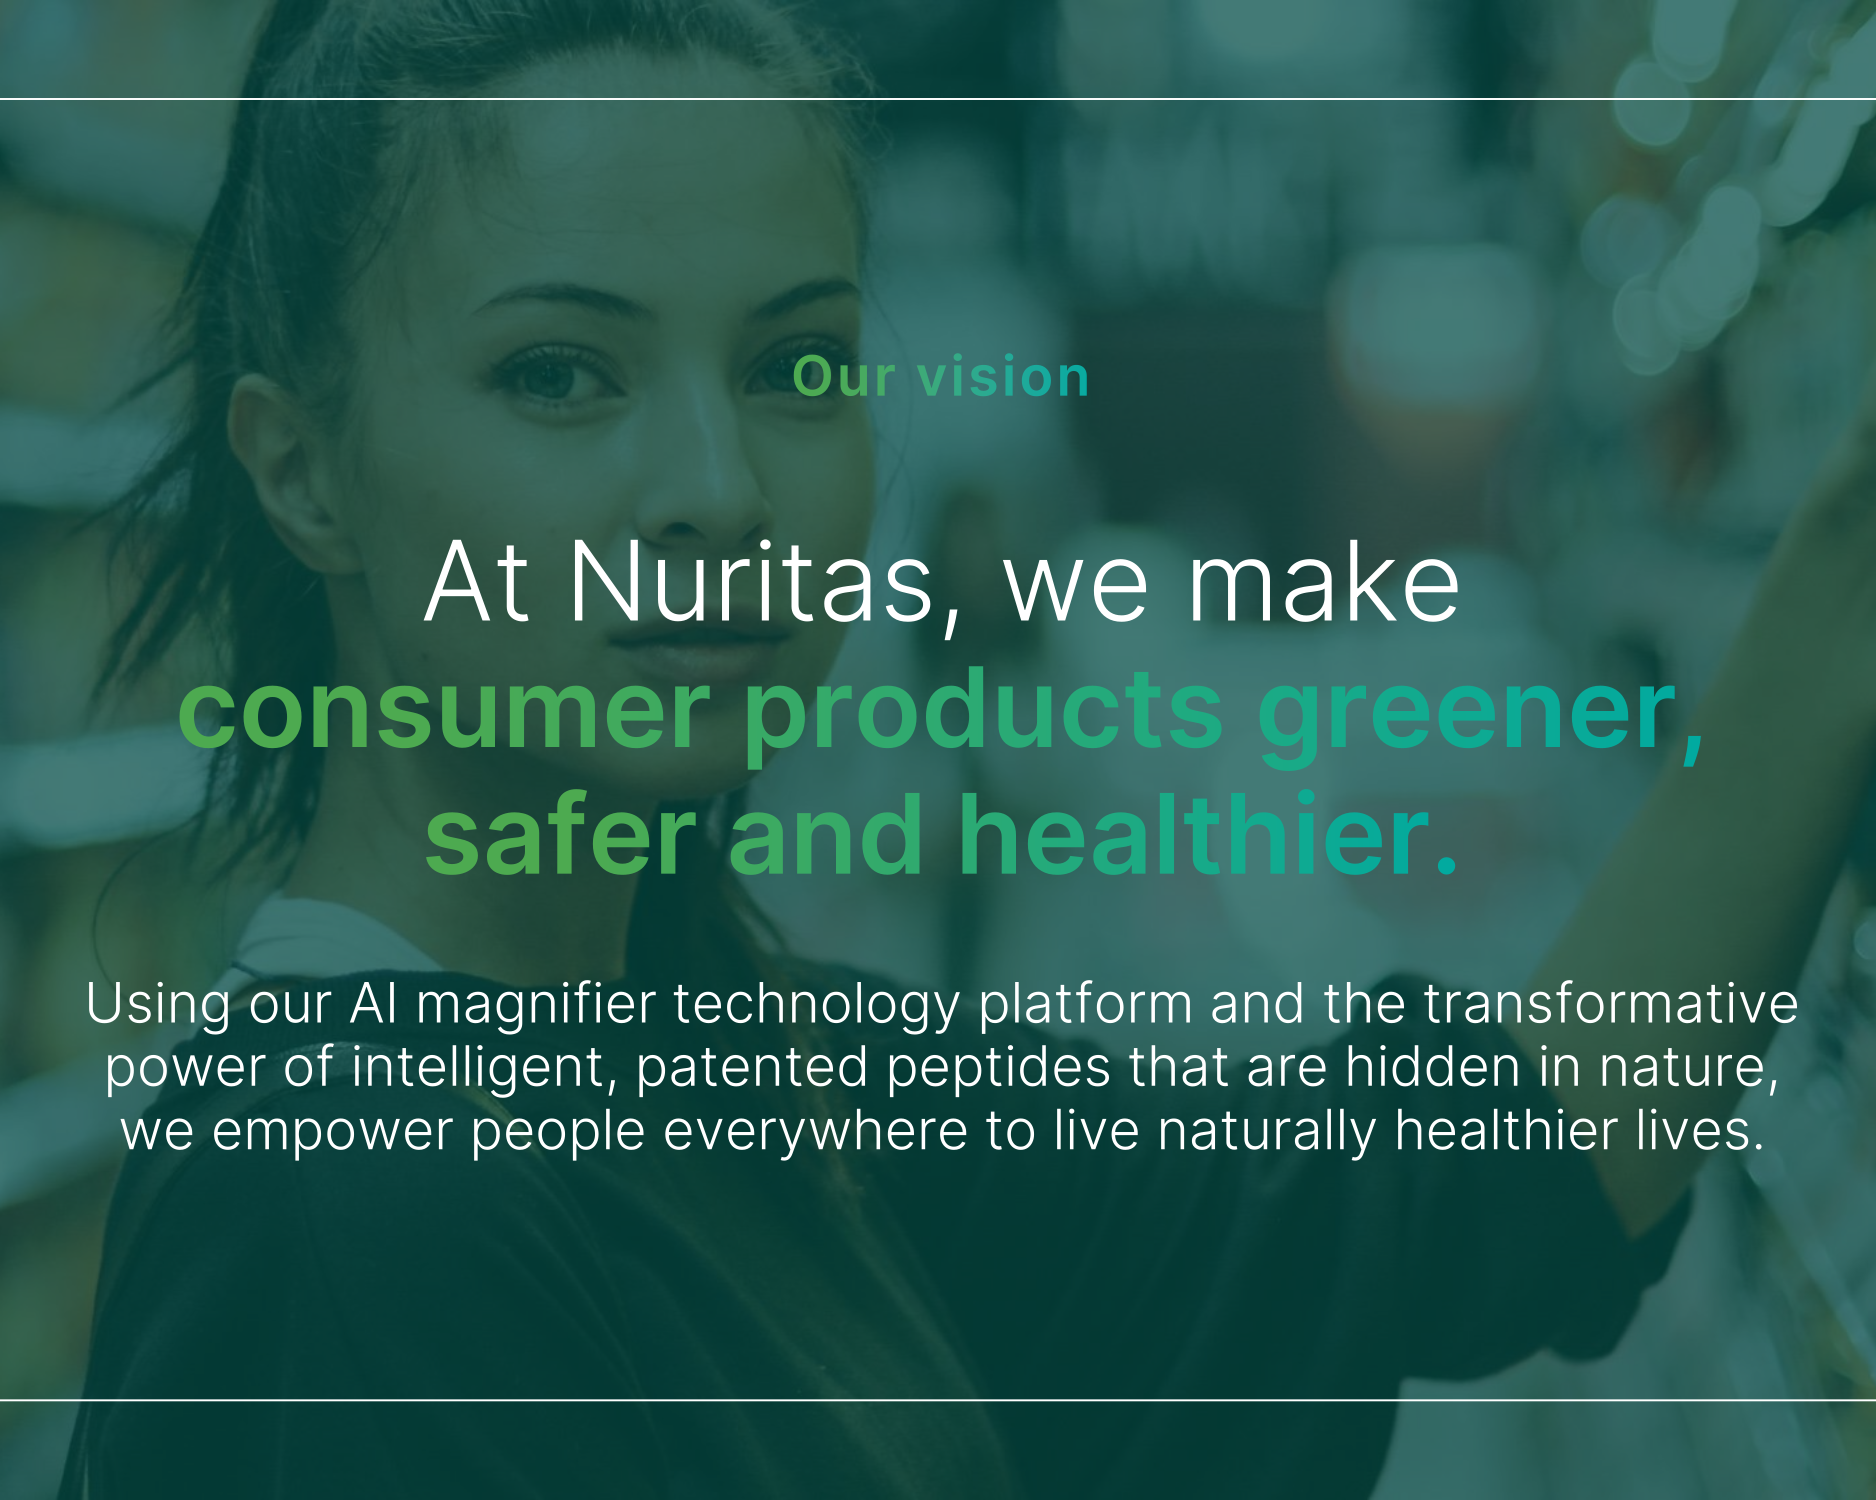 The Nuritas Vision